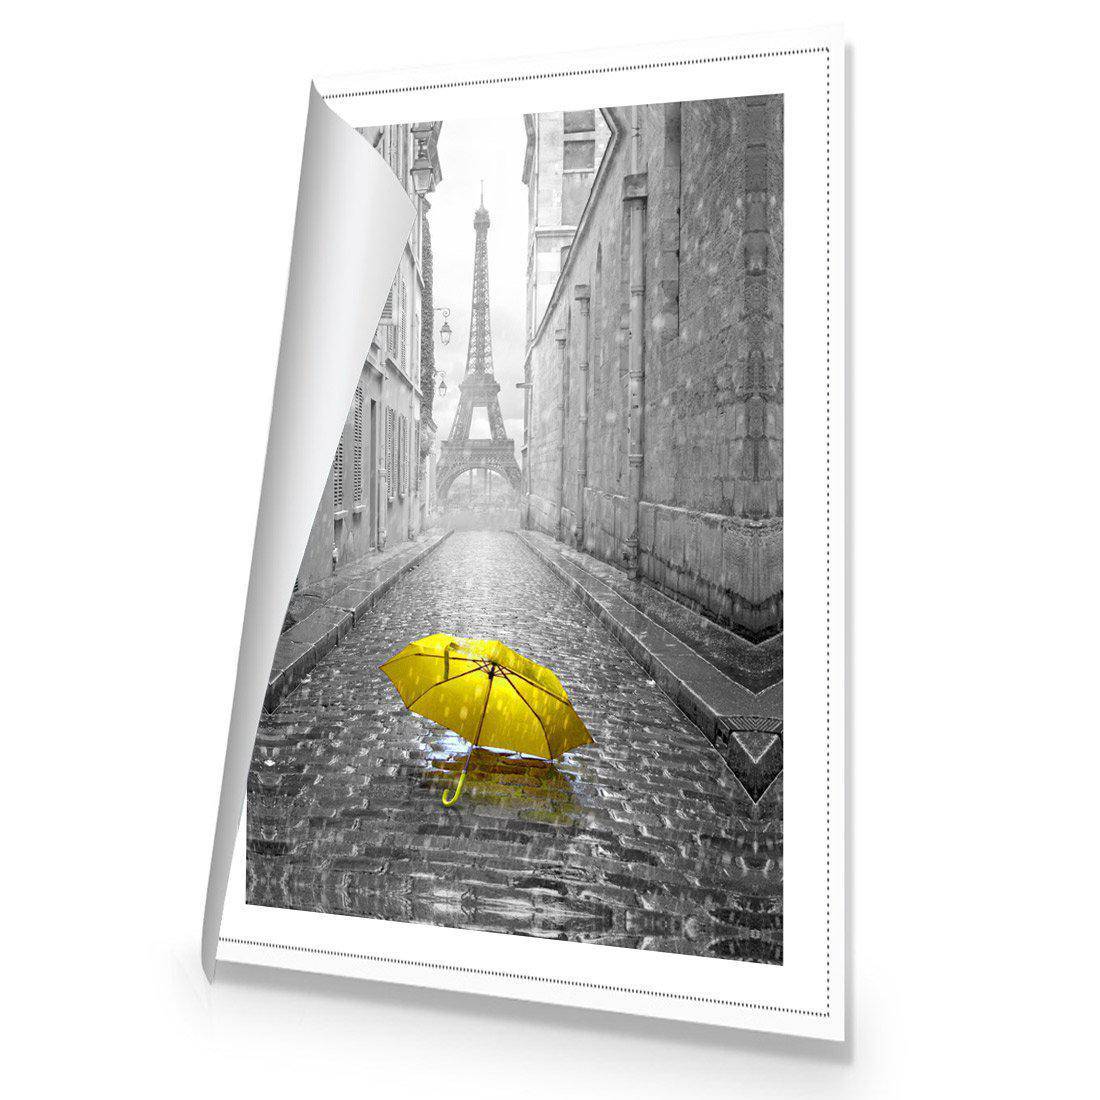 Lost Umbrella In Paris, Yellow Canvas Art-Canvas-Wall Art Designs-45x30cm-Rolled Canvas-Wall Art Designs